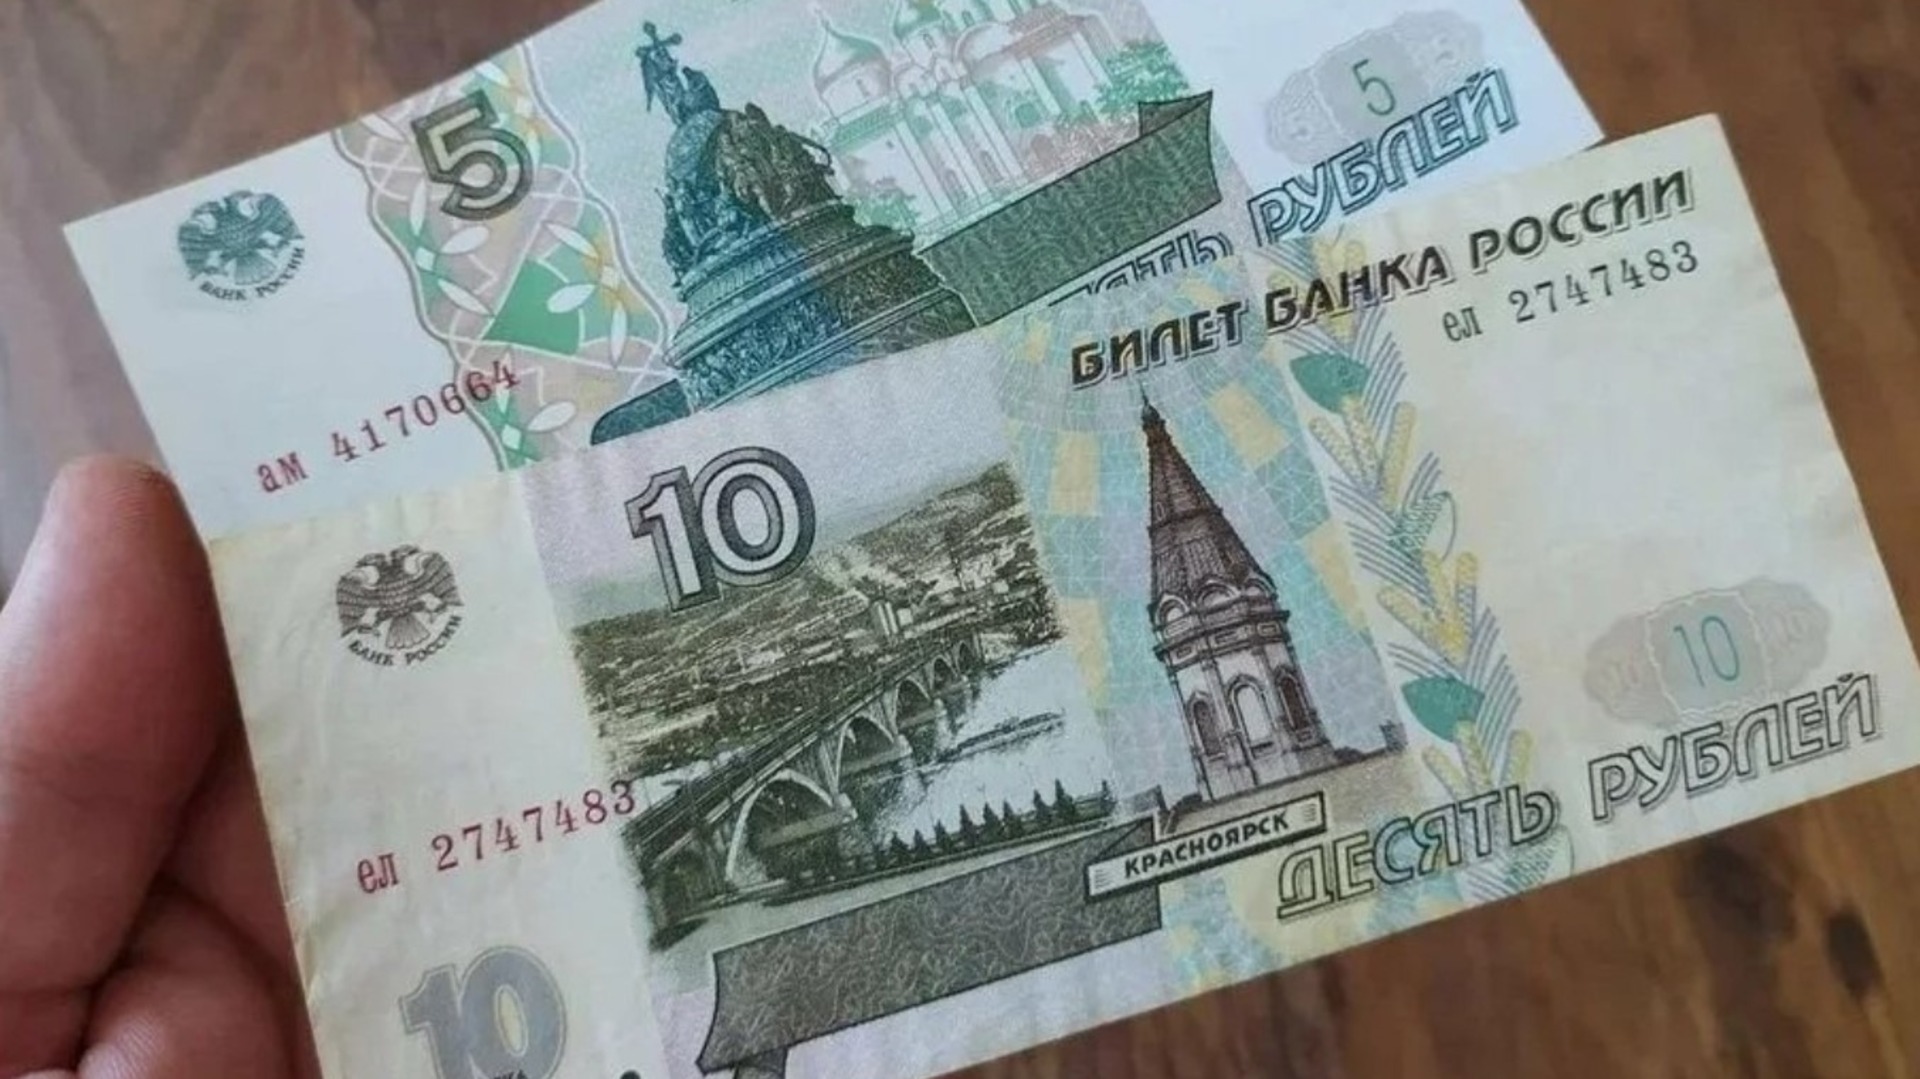 5 рублей вернули. Бумажные деньги 5 и 10 рублей. 5 И 10 рублей бумажные. Новая купюра 5 рублей. 10 Рублей бумажные.